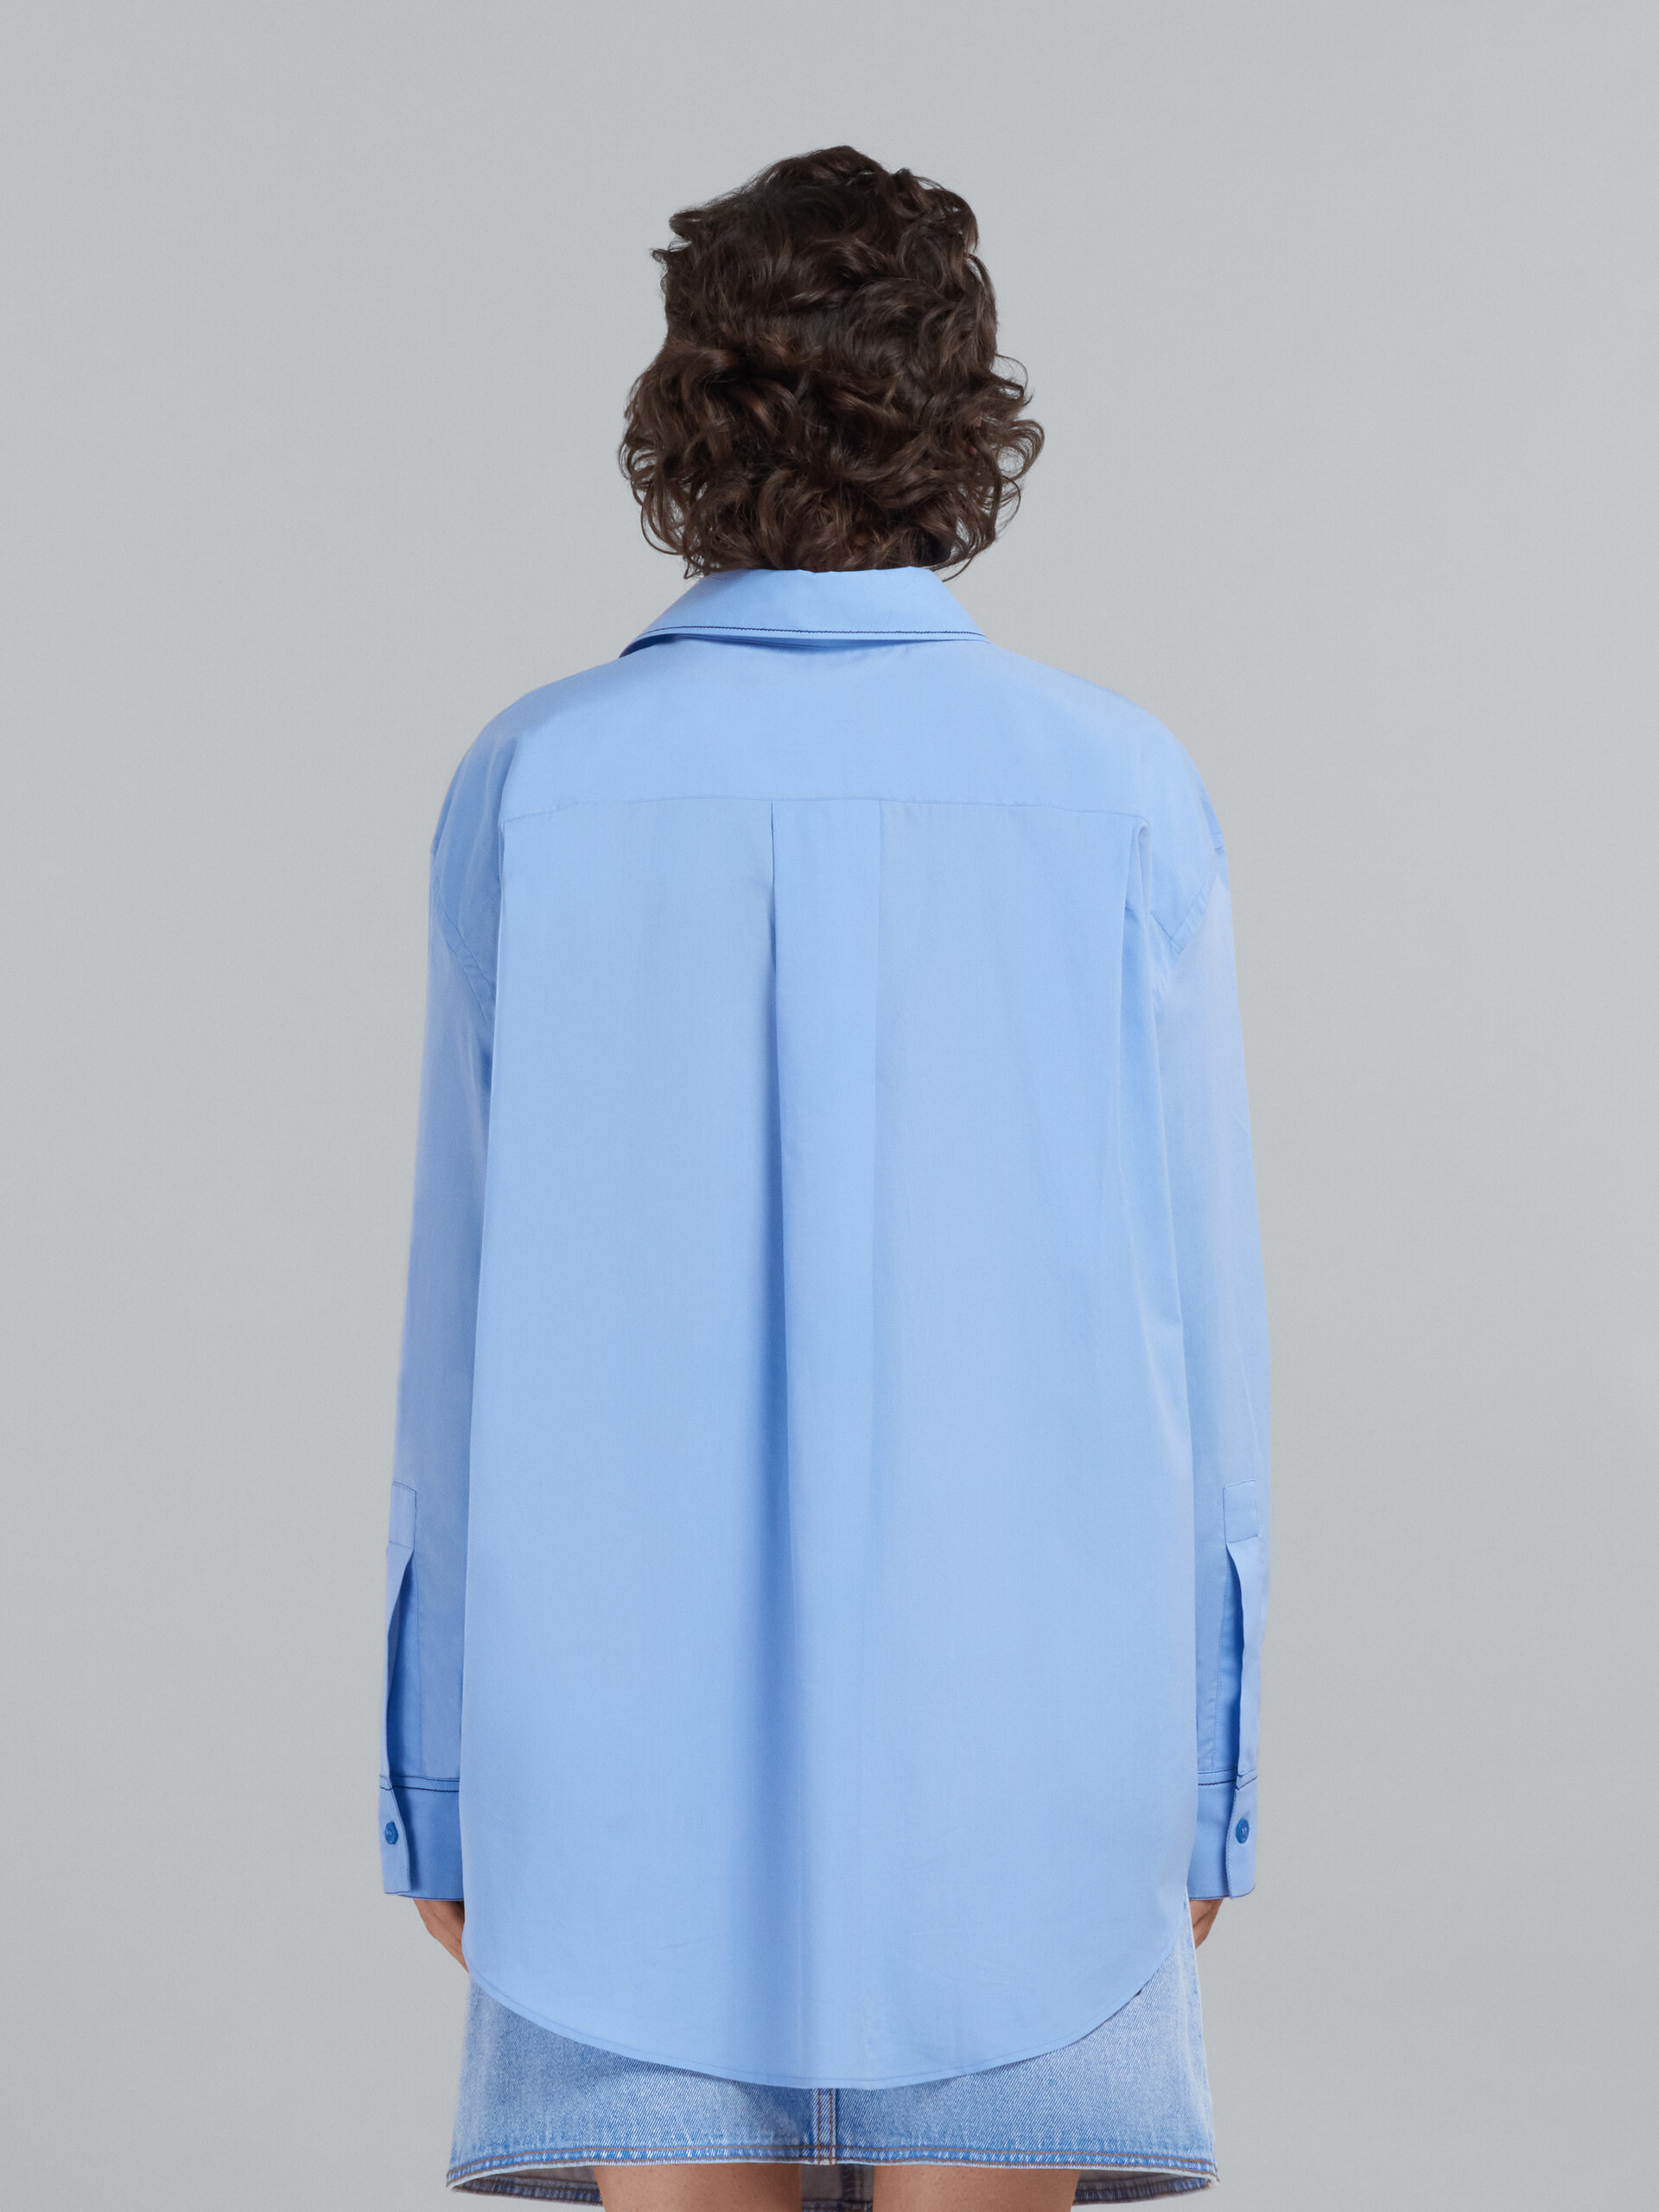 Chemise en coton biologique bleu clair avec logo brodé - Chemises - Image 3